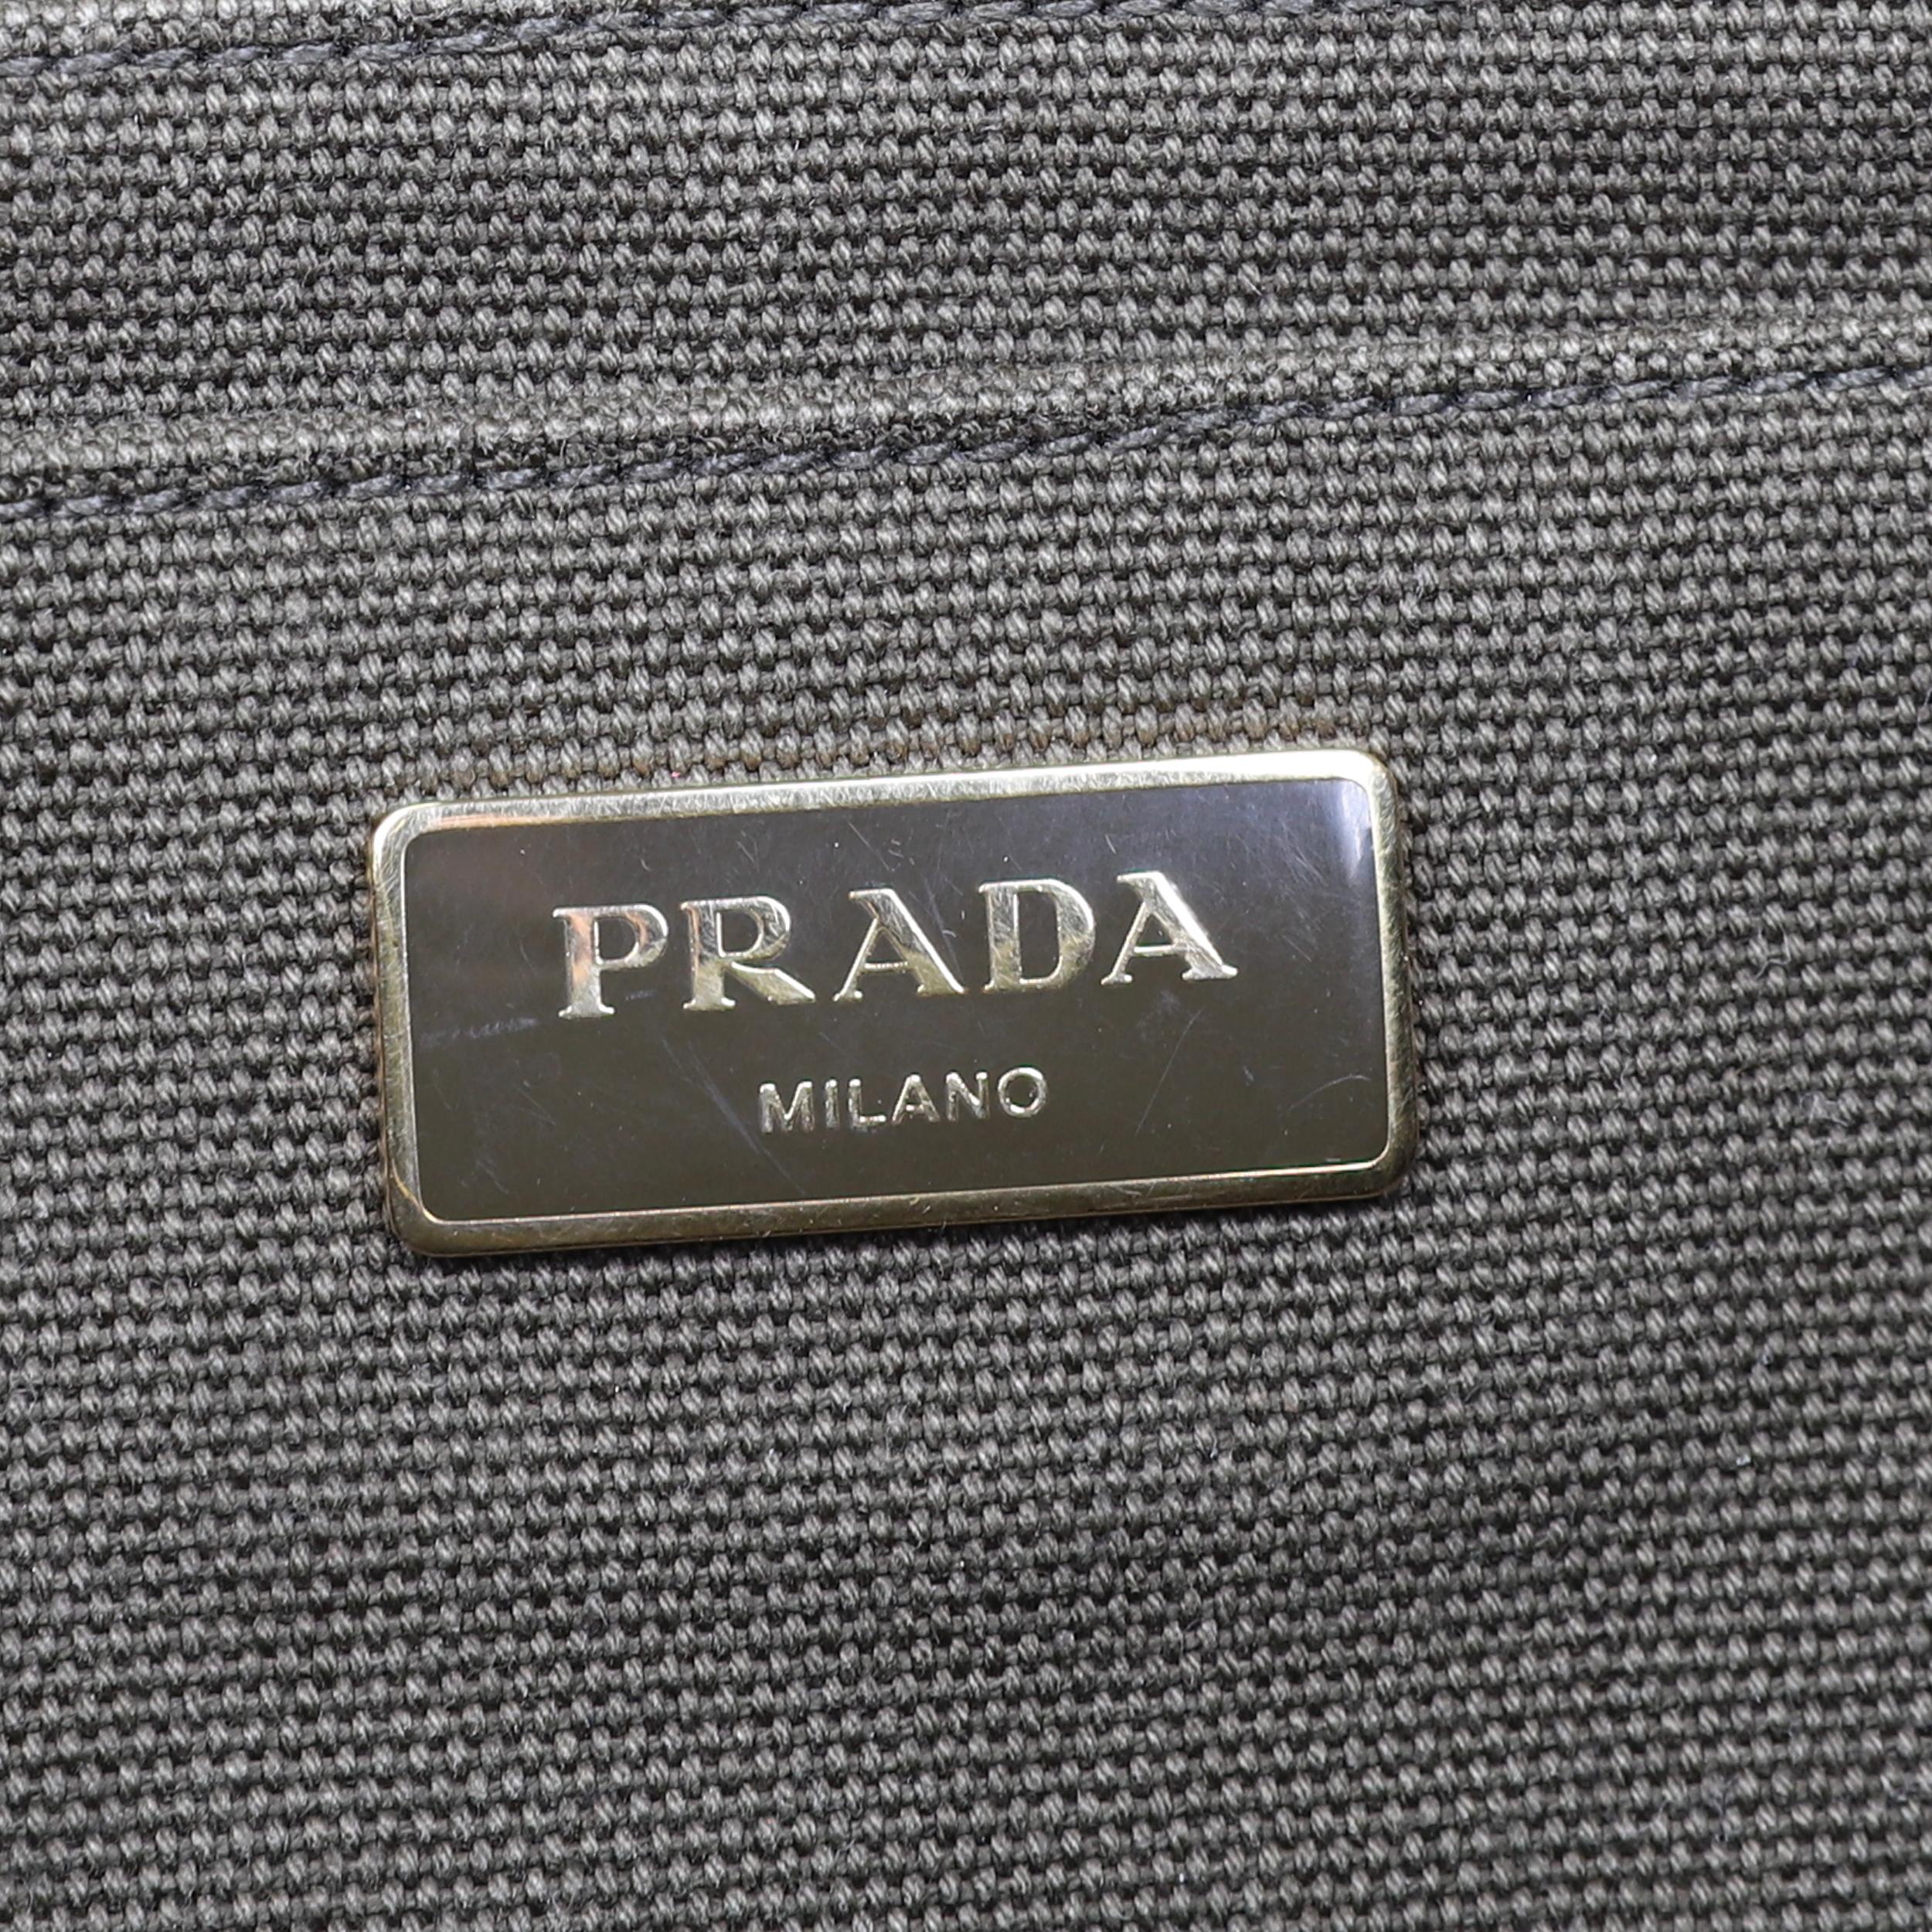 Prada Canapa Tote In Good Condition For Sale In Rīga, LV